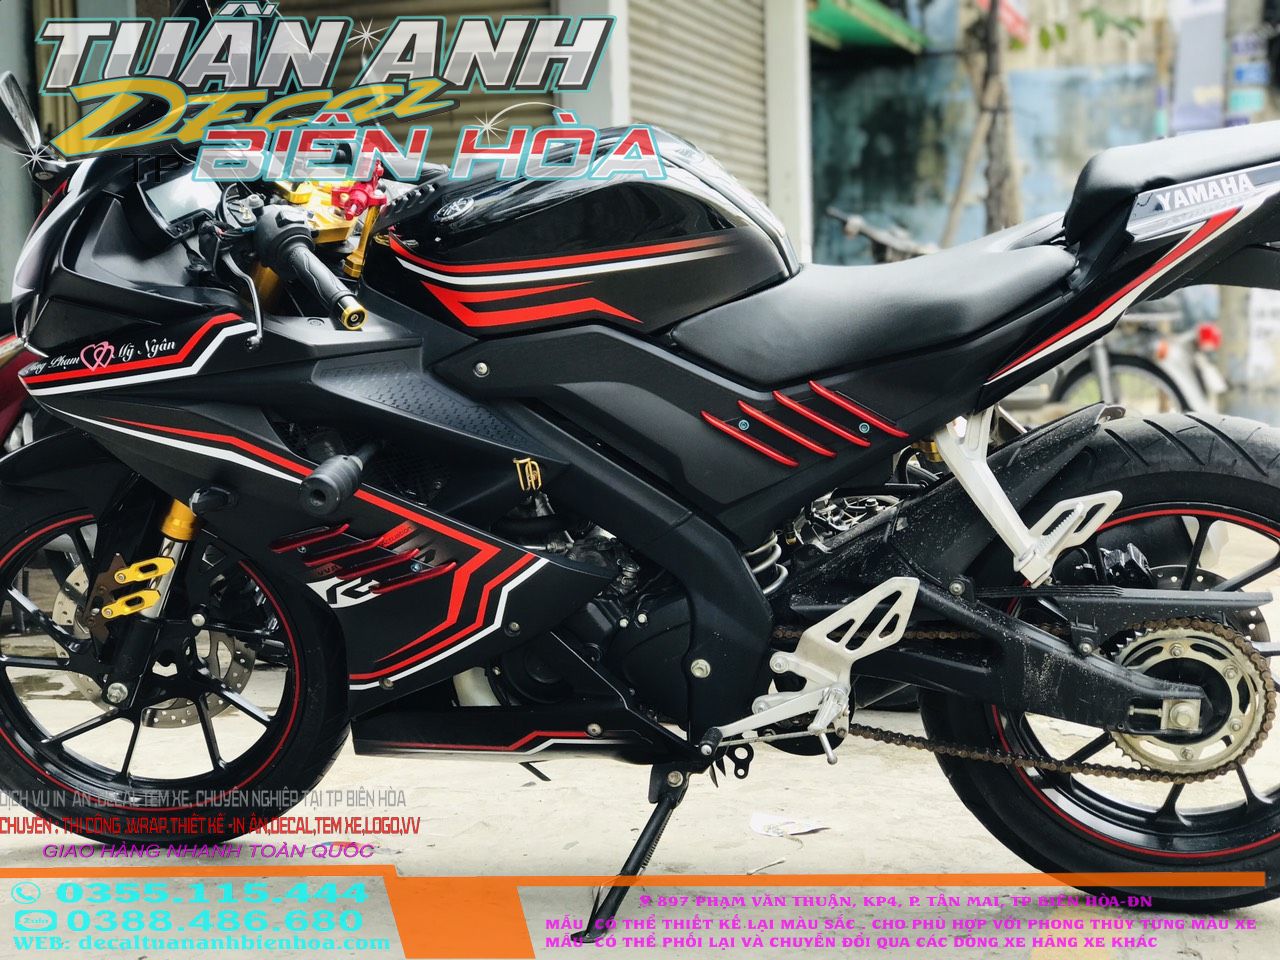 Thông tin về chiếc Yamaha R15 V3 đen nhám huyền bí sắp về Việt Nam